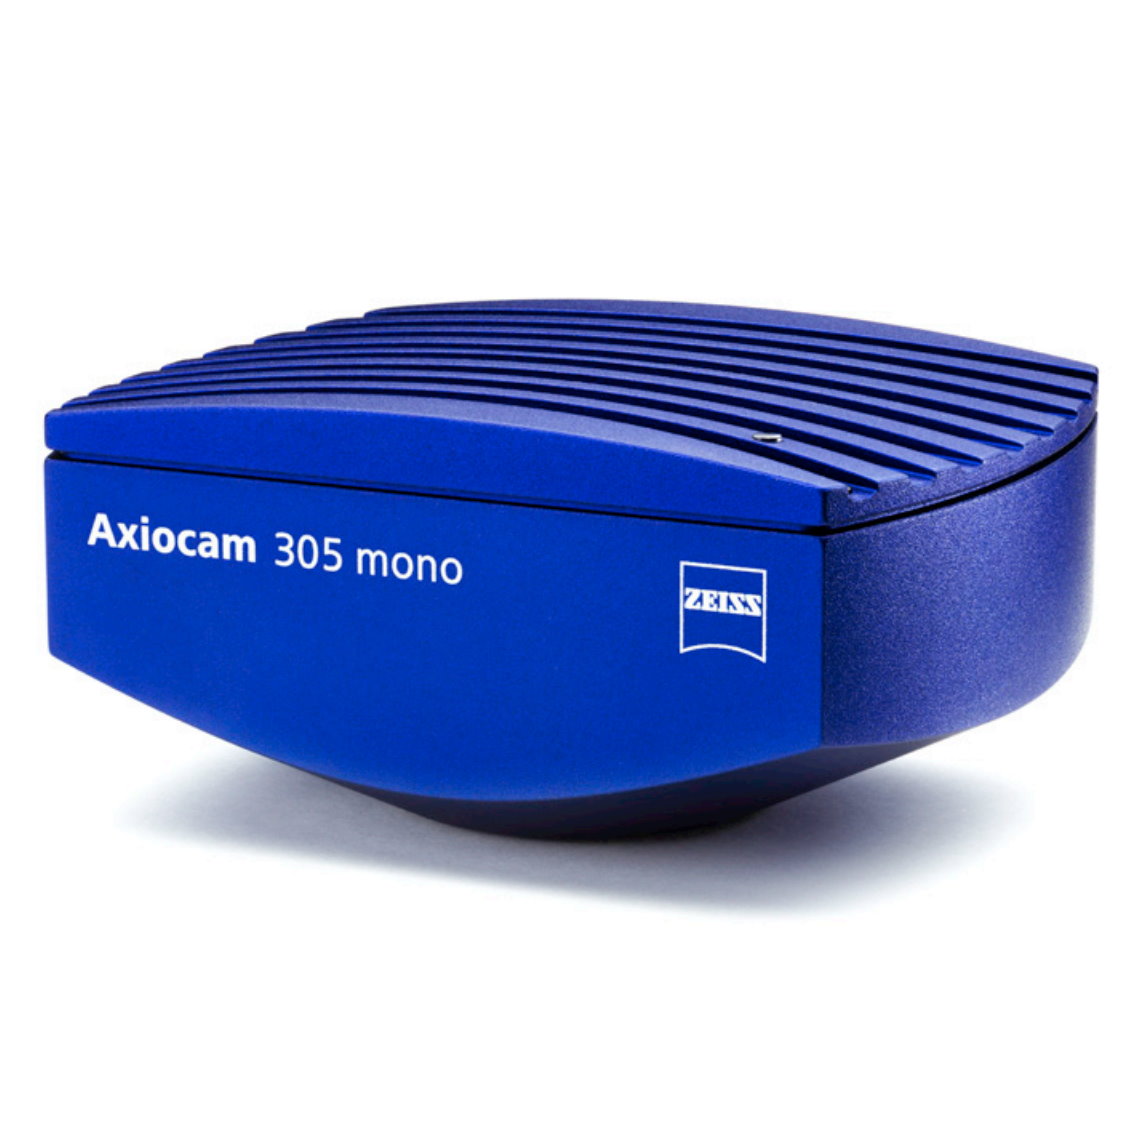 Mikroskopie-Kamera Axiocam 305 mono R2 (D)